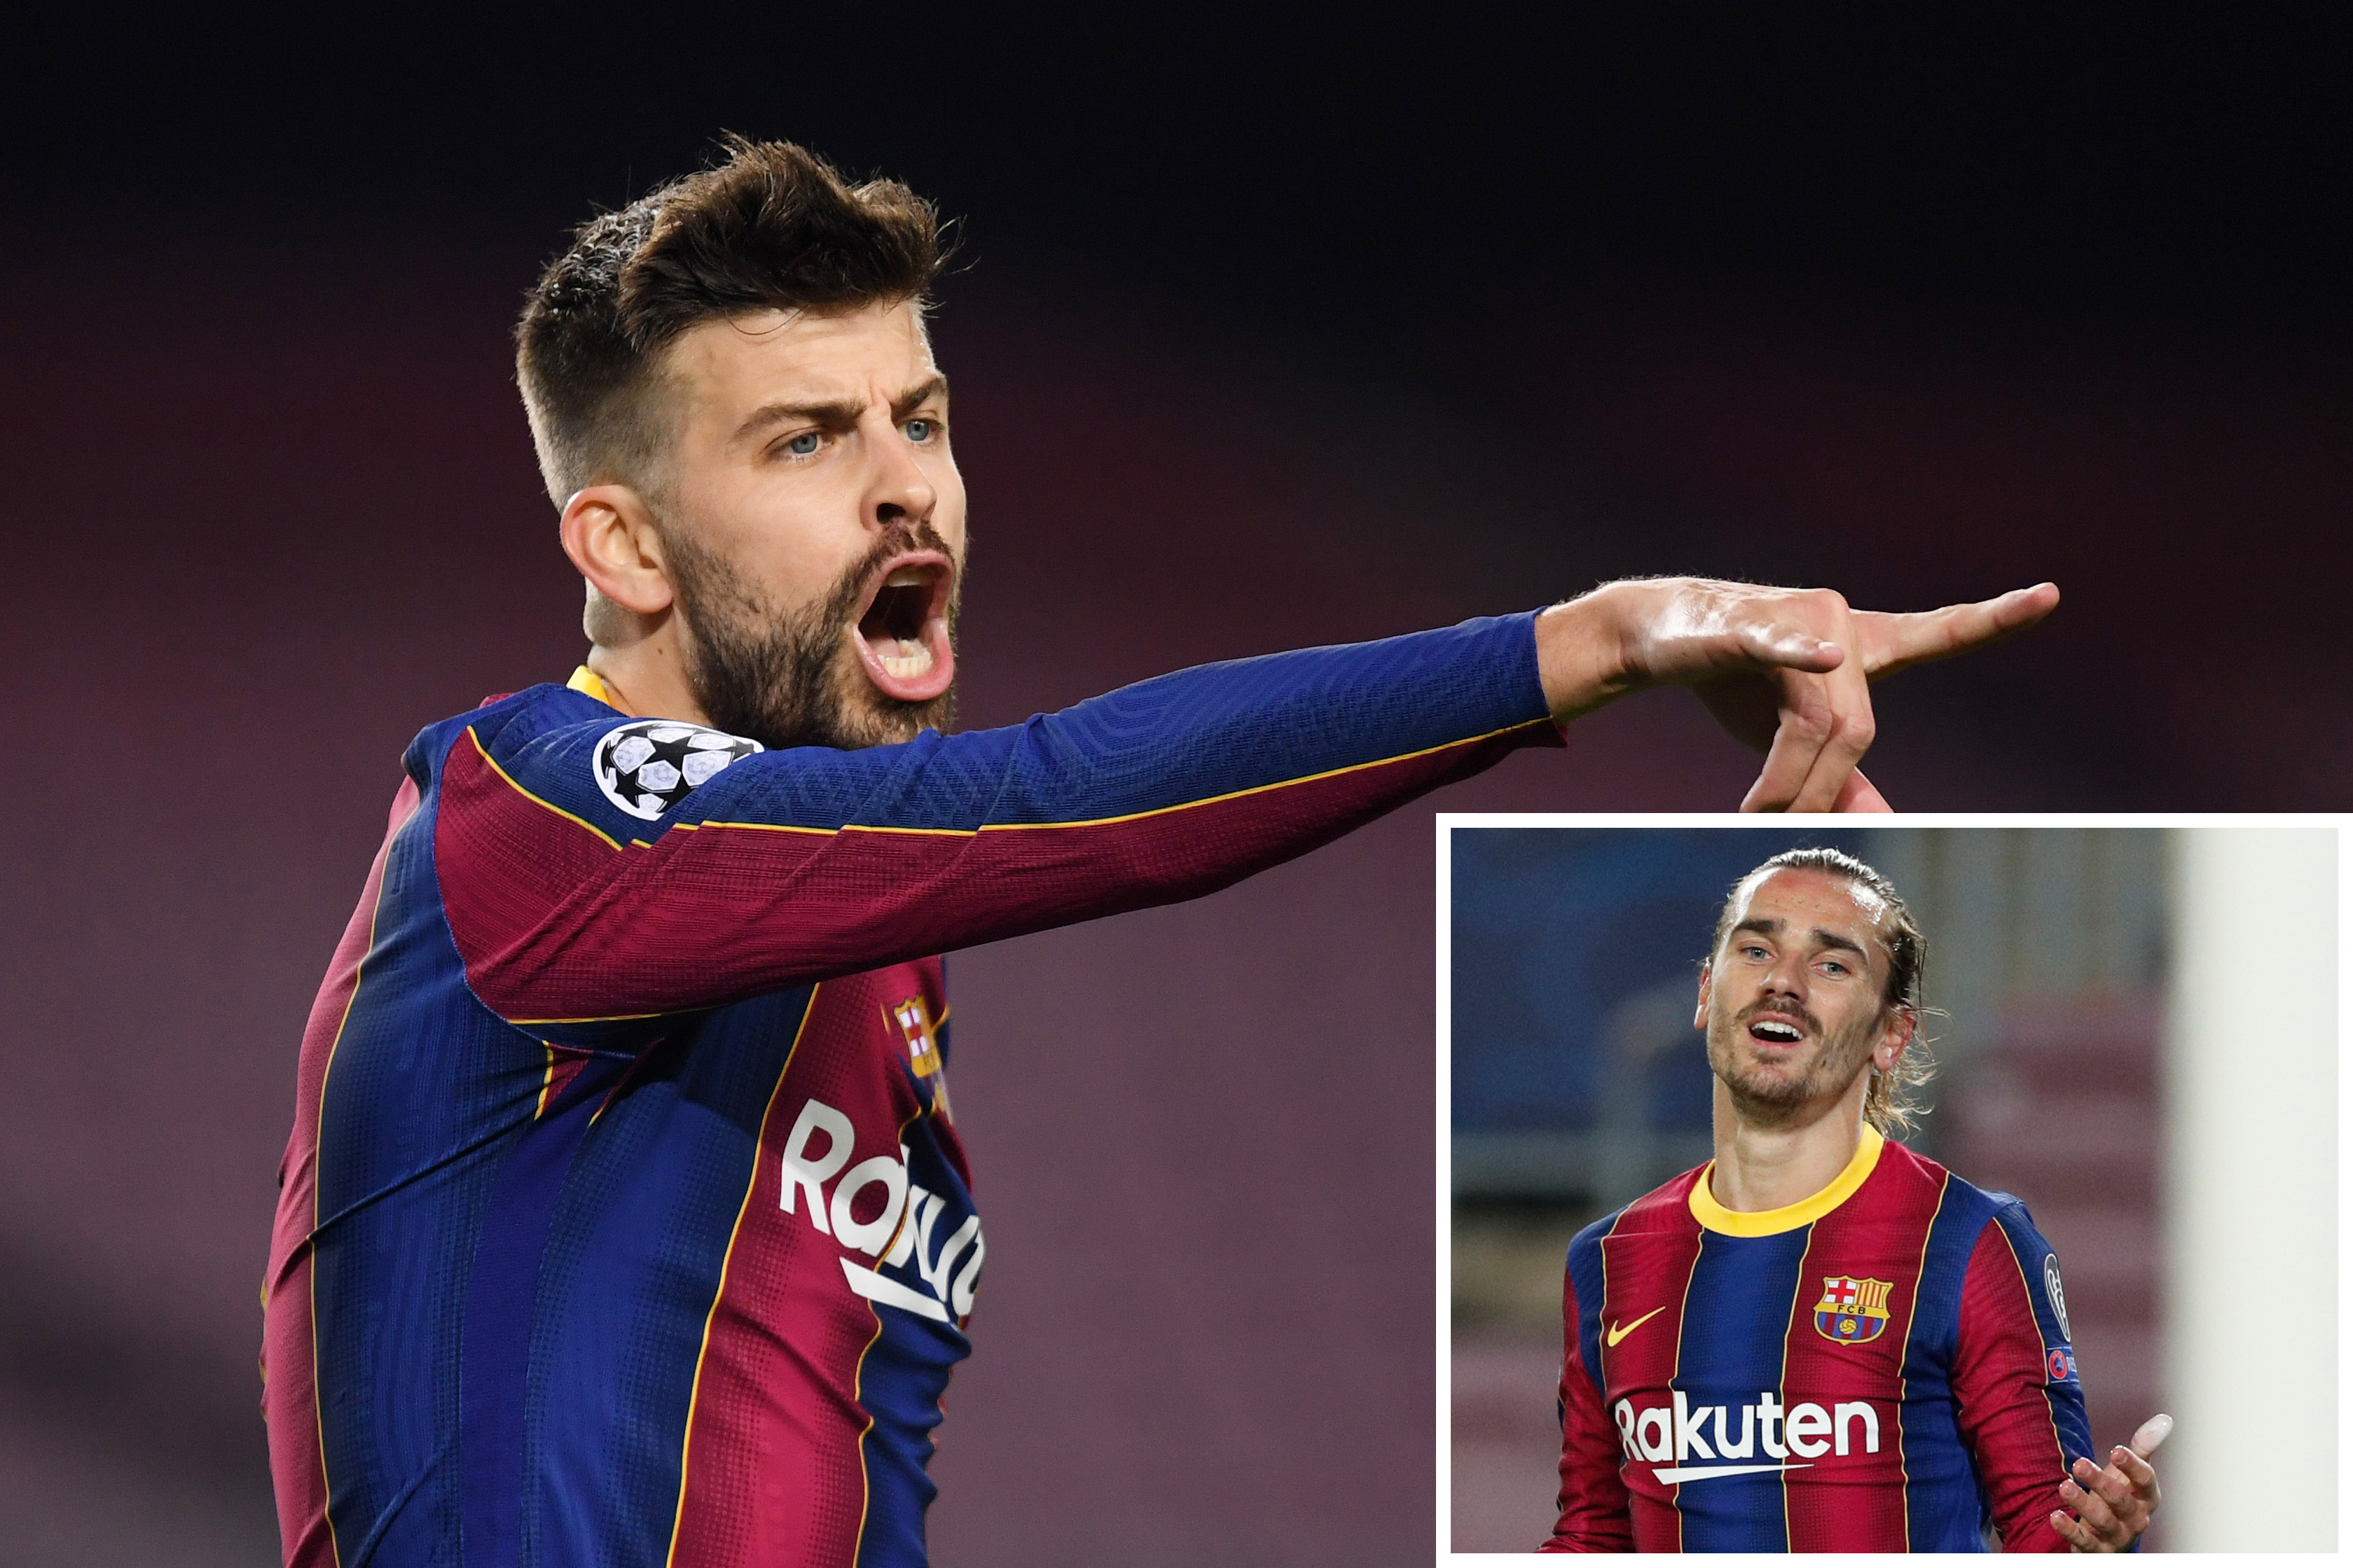 Thua tan nát PSG, ngôi sao của Barca còn hết lời ca ngợi đối thủ khiến CĐV nổi giận 'đuổi thẳng cổ'